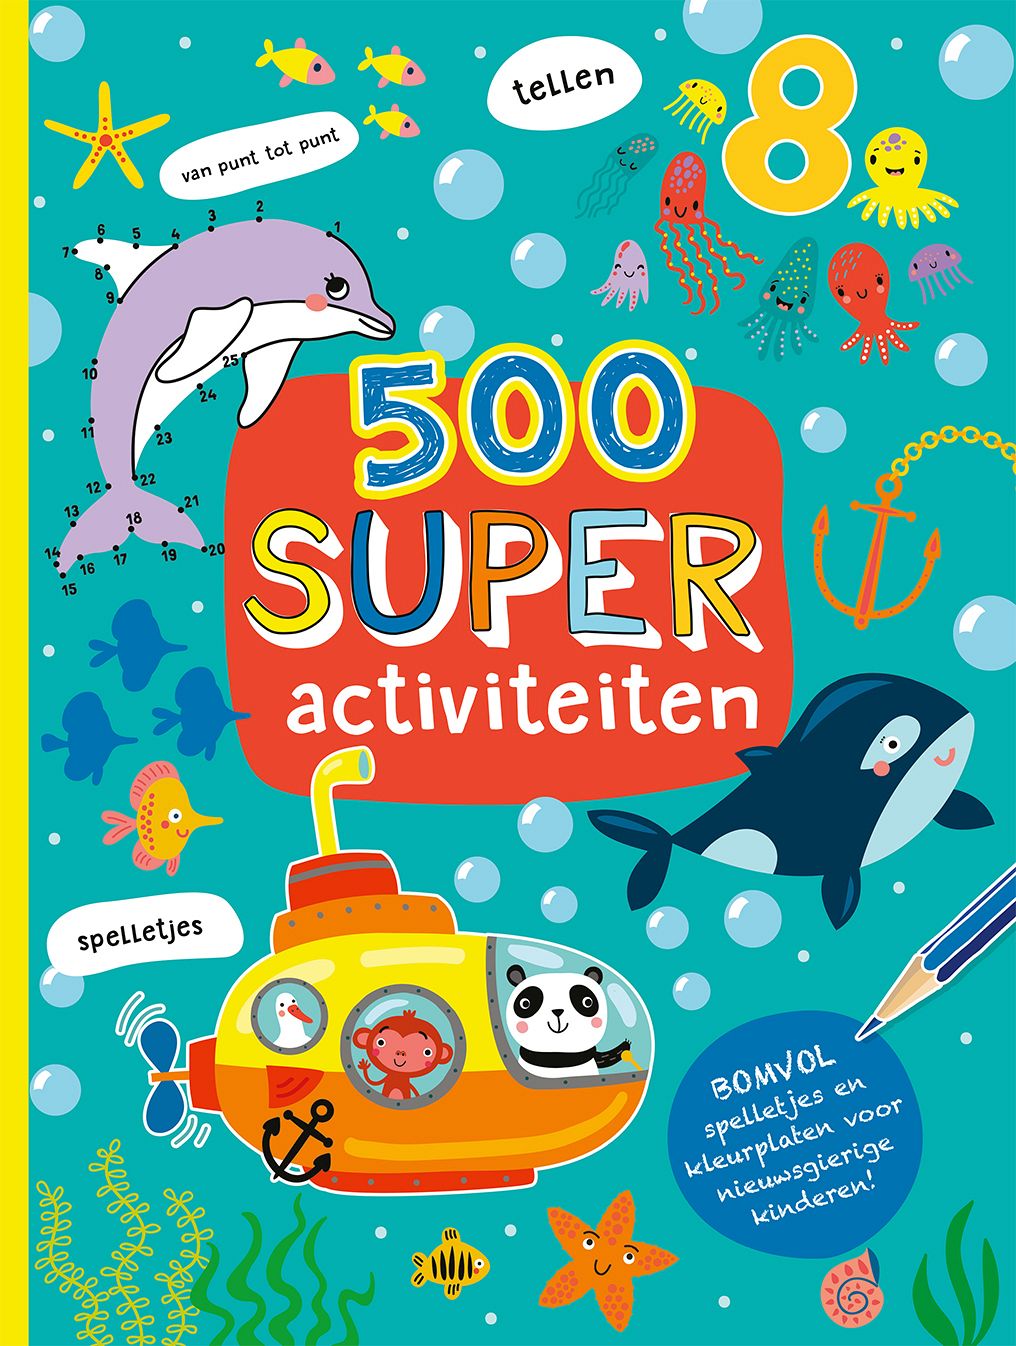 Controversieel enkel en alleen Circulaire 500 Super Activiteiten boek - Anyfma Lifestyle Boxtel